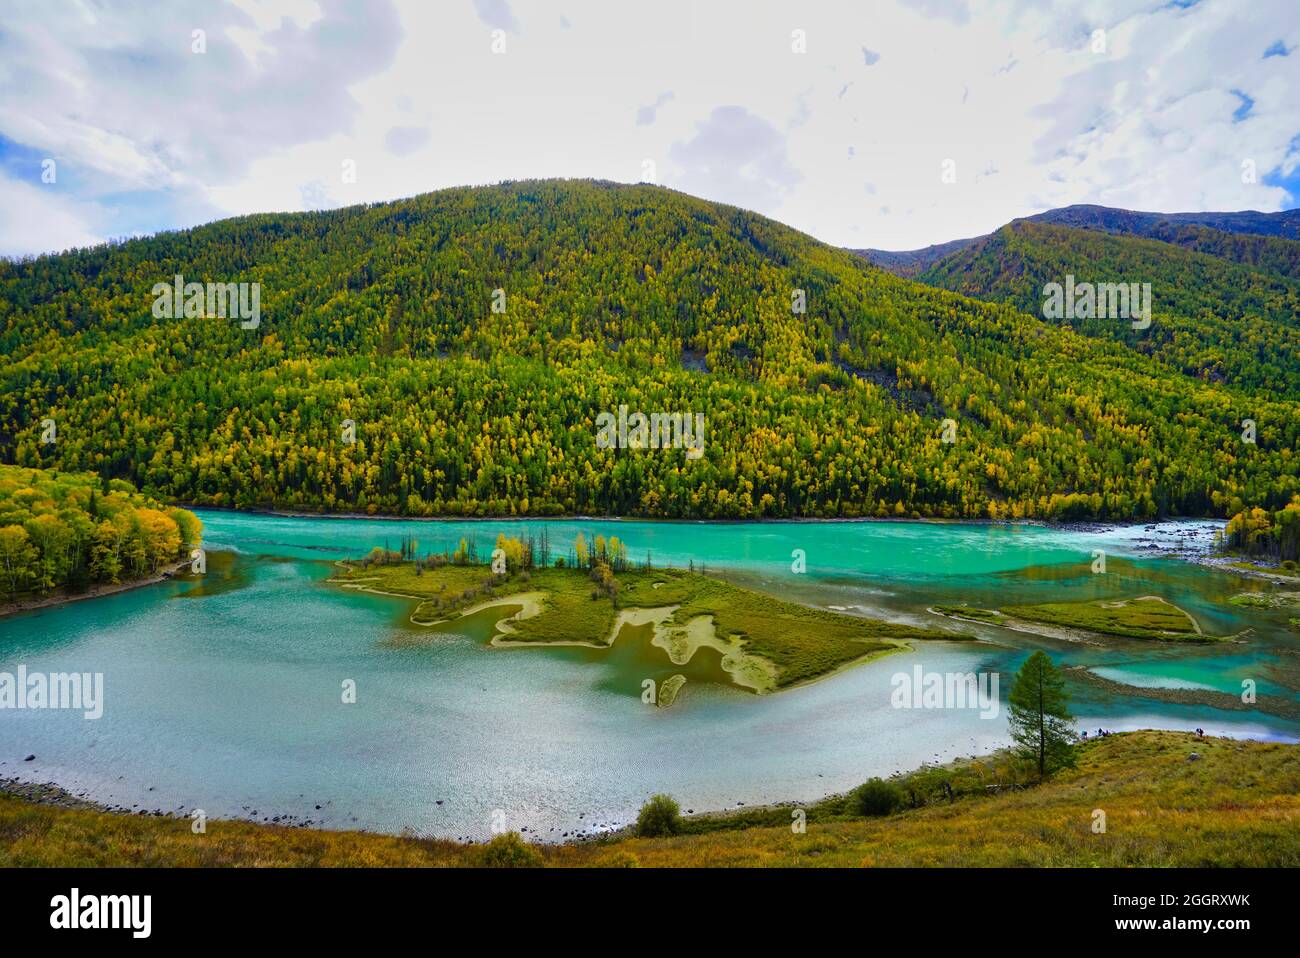 Baie de Wolong du lac Kanas. Rivière bleu cristal, petite sandbar.Green Tree collines. La beauté naturelle du paradis. Réserve naturelle de Kanas. Province de Xinjiang Banque D'Images